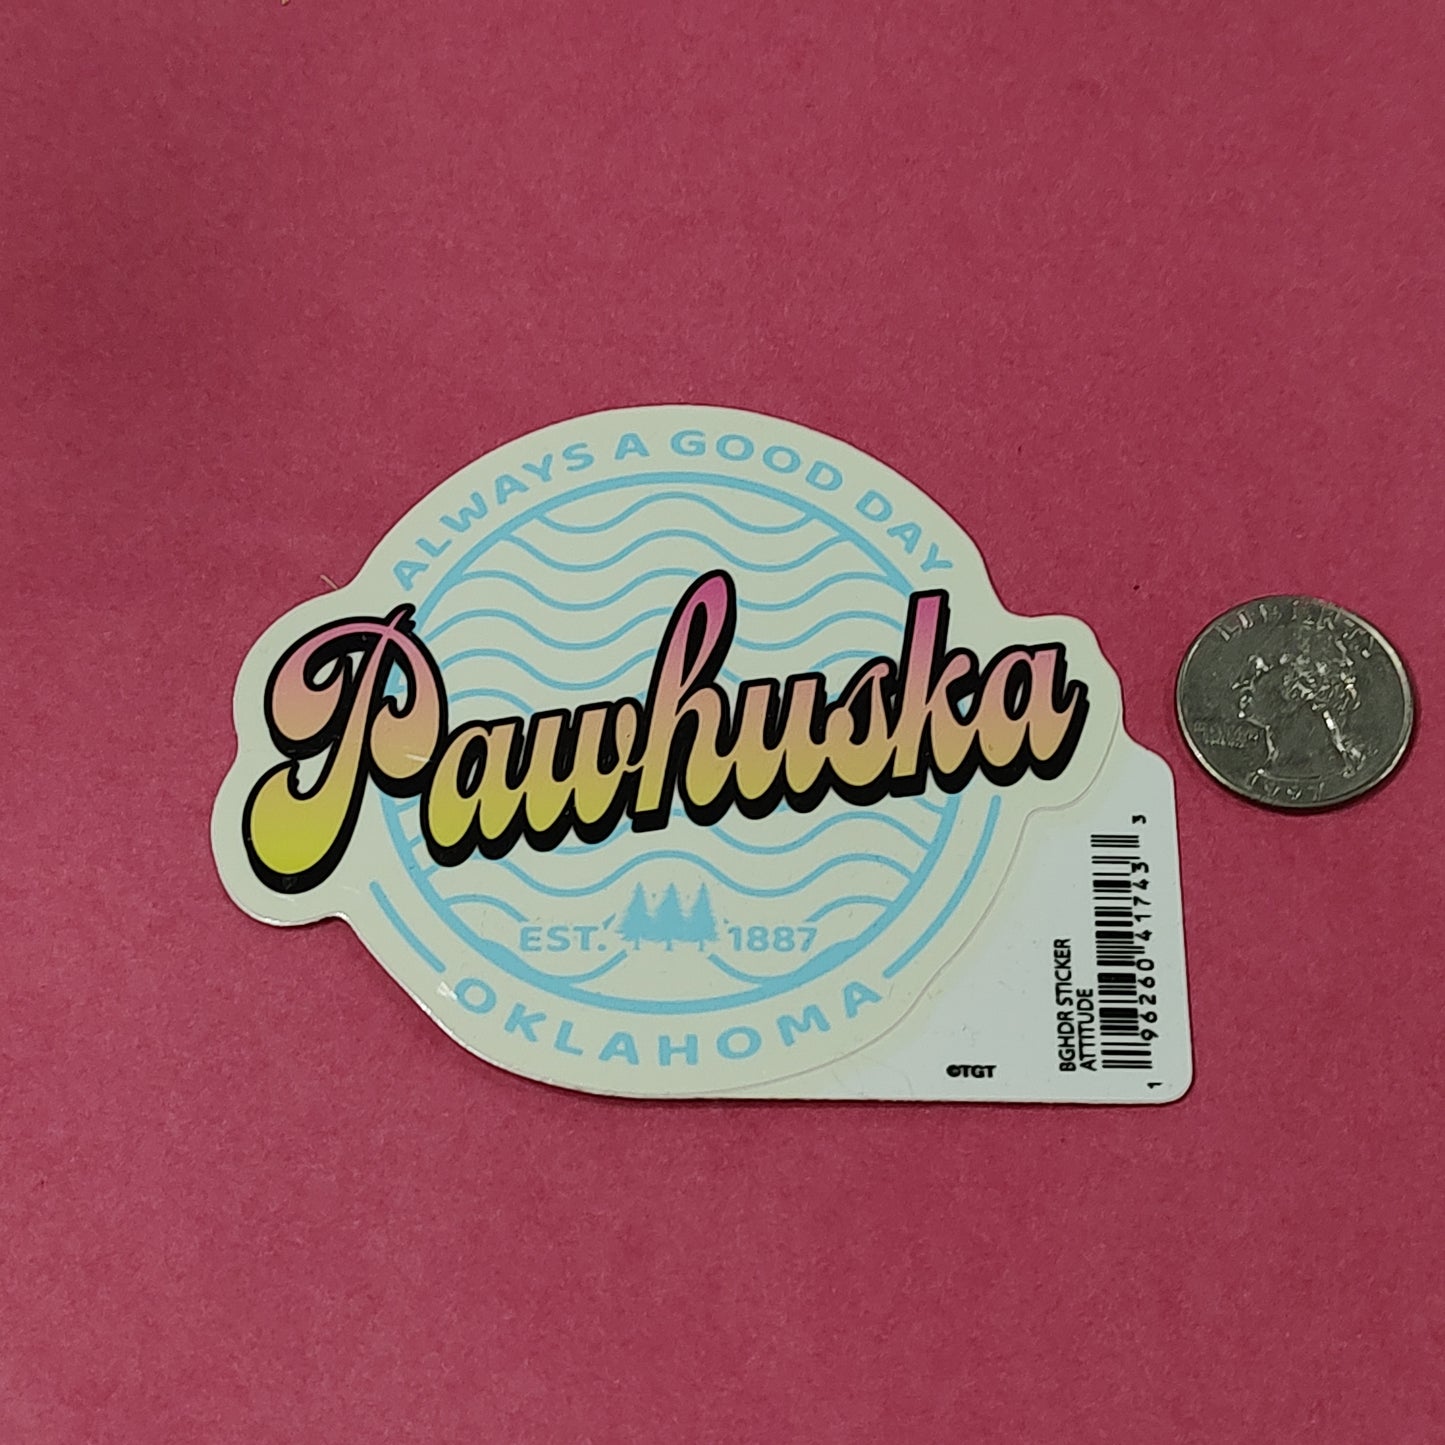 Always a good day Pawhuska, OK - sticker